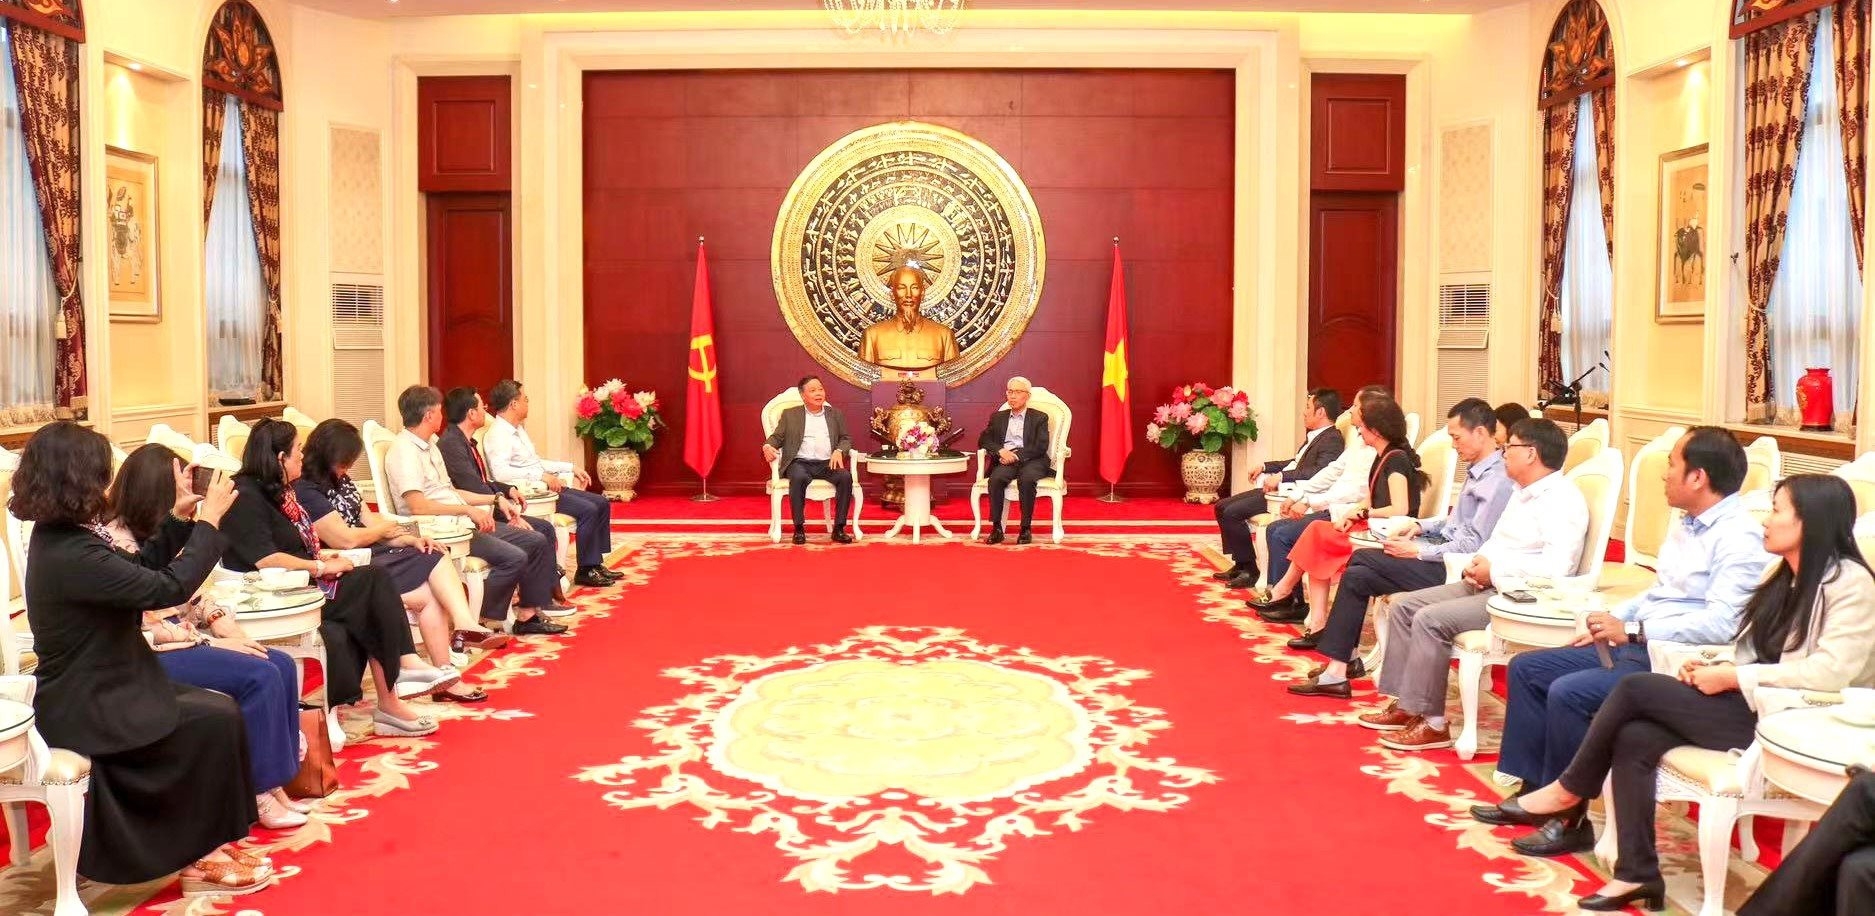 推动河内和北京关系成为越中地方合作的典范